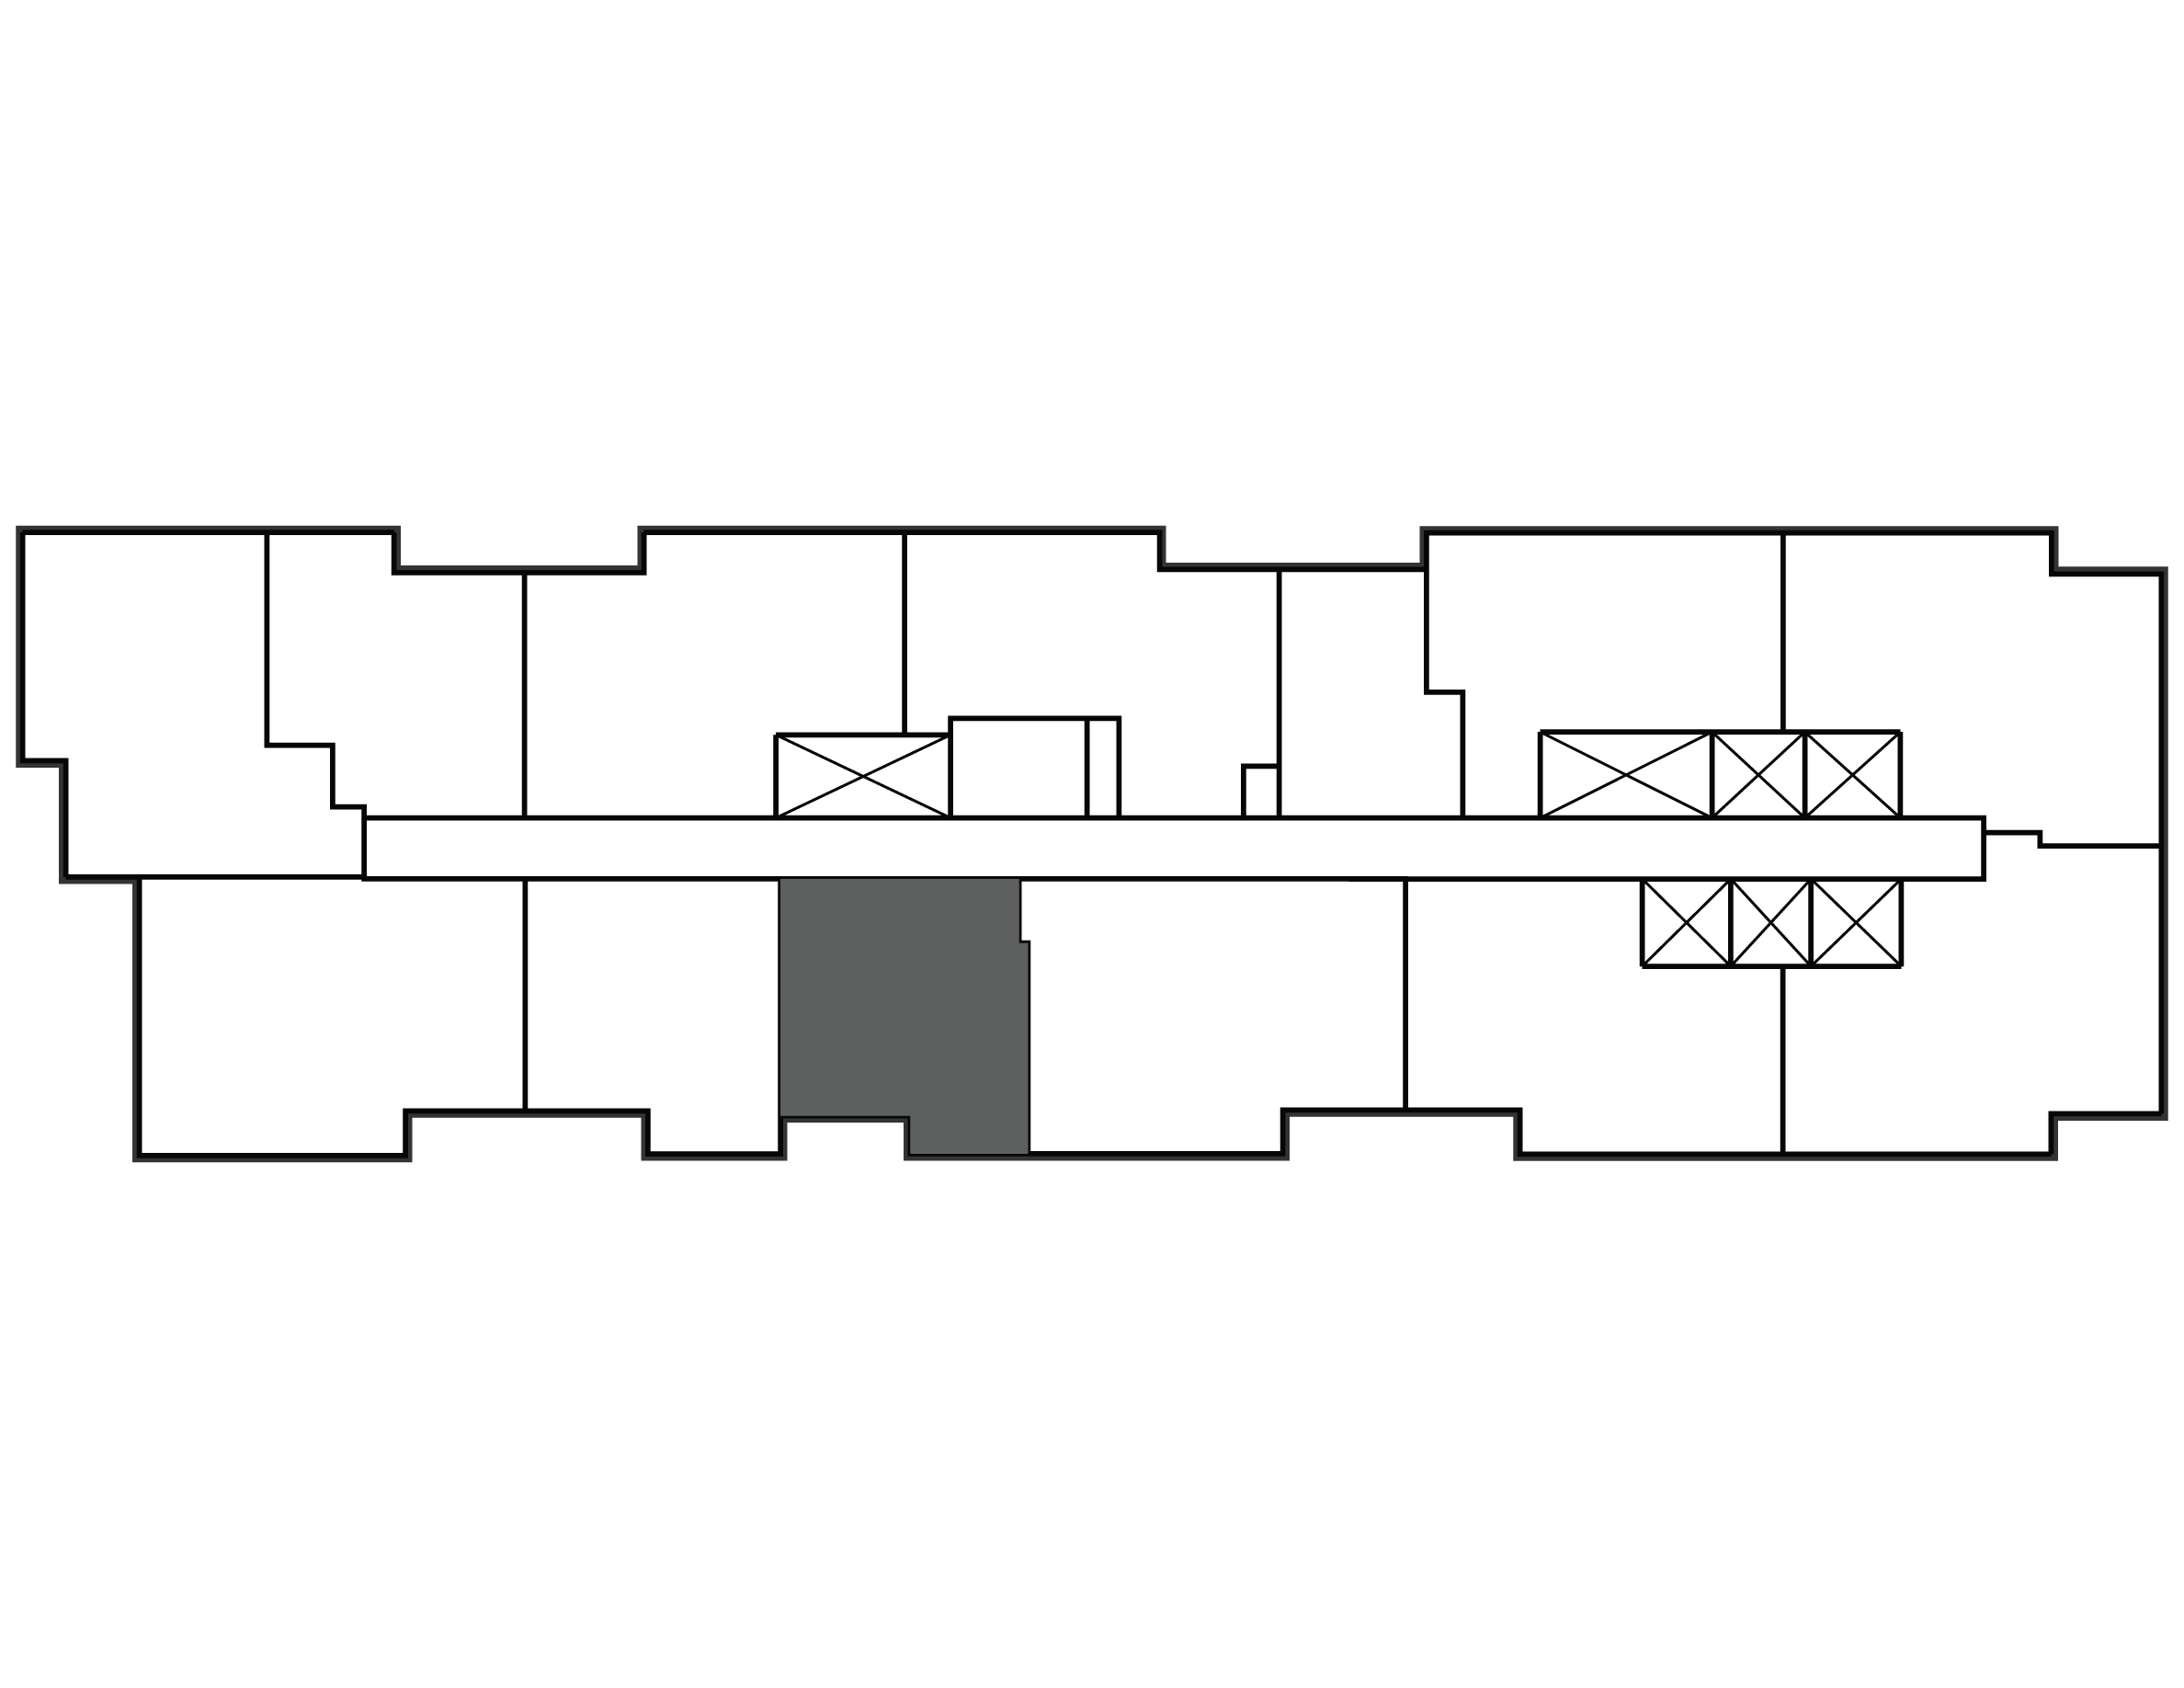 Key plan image of apartment 2704